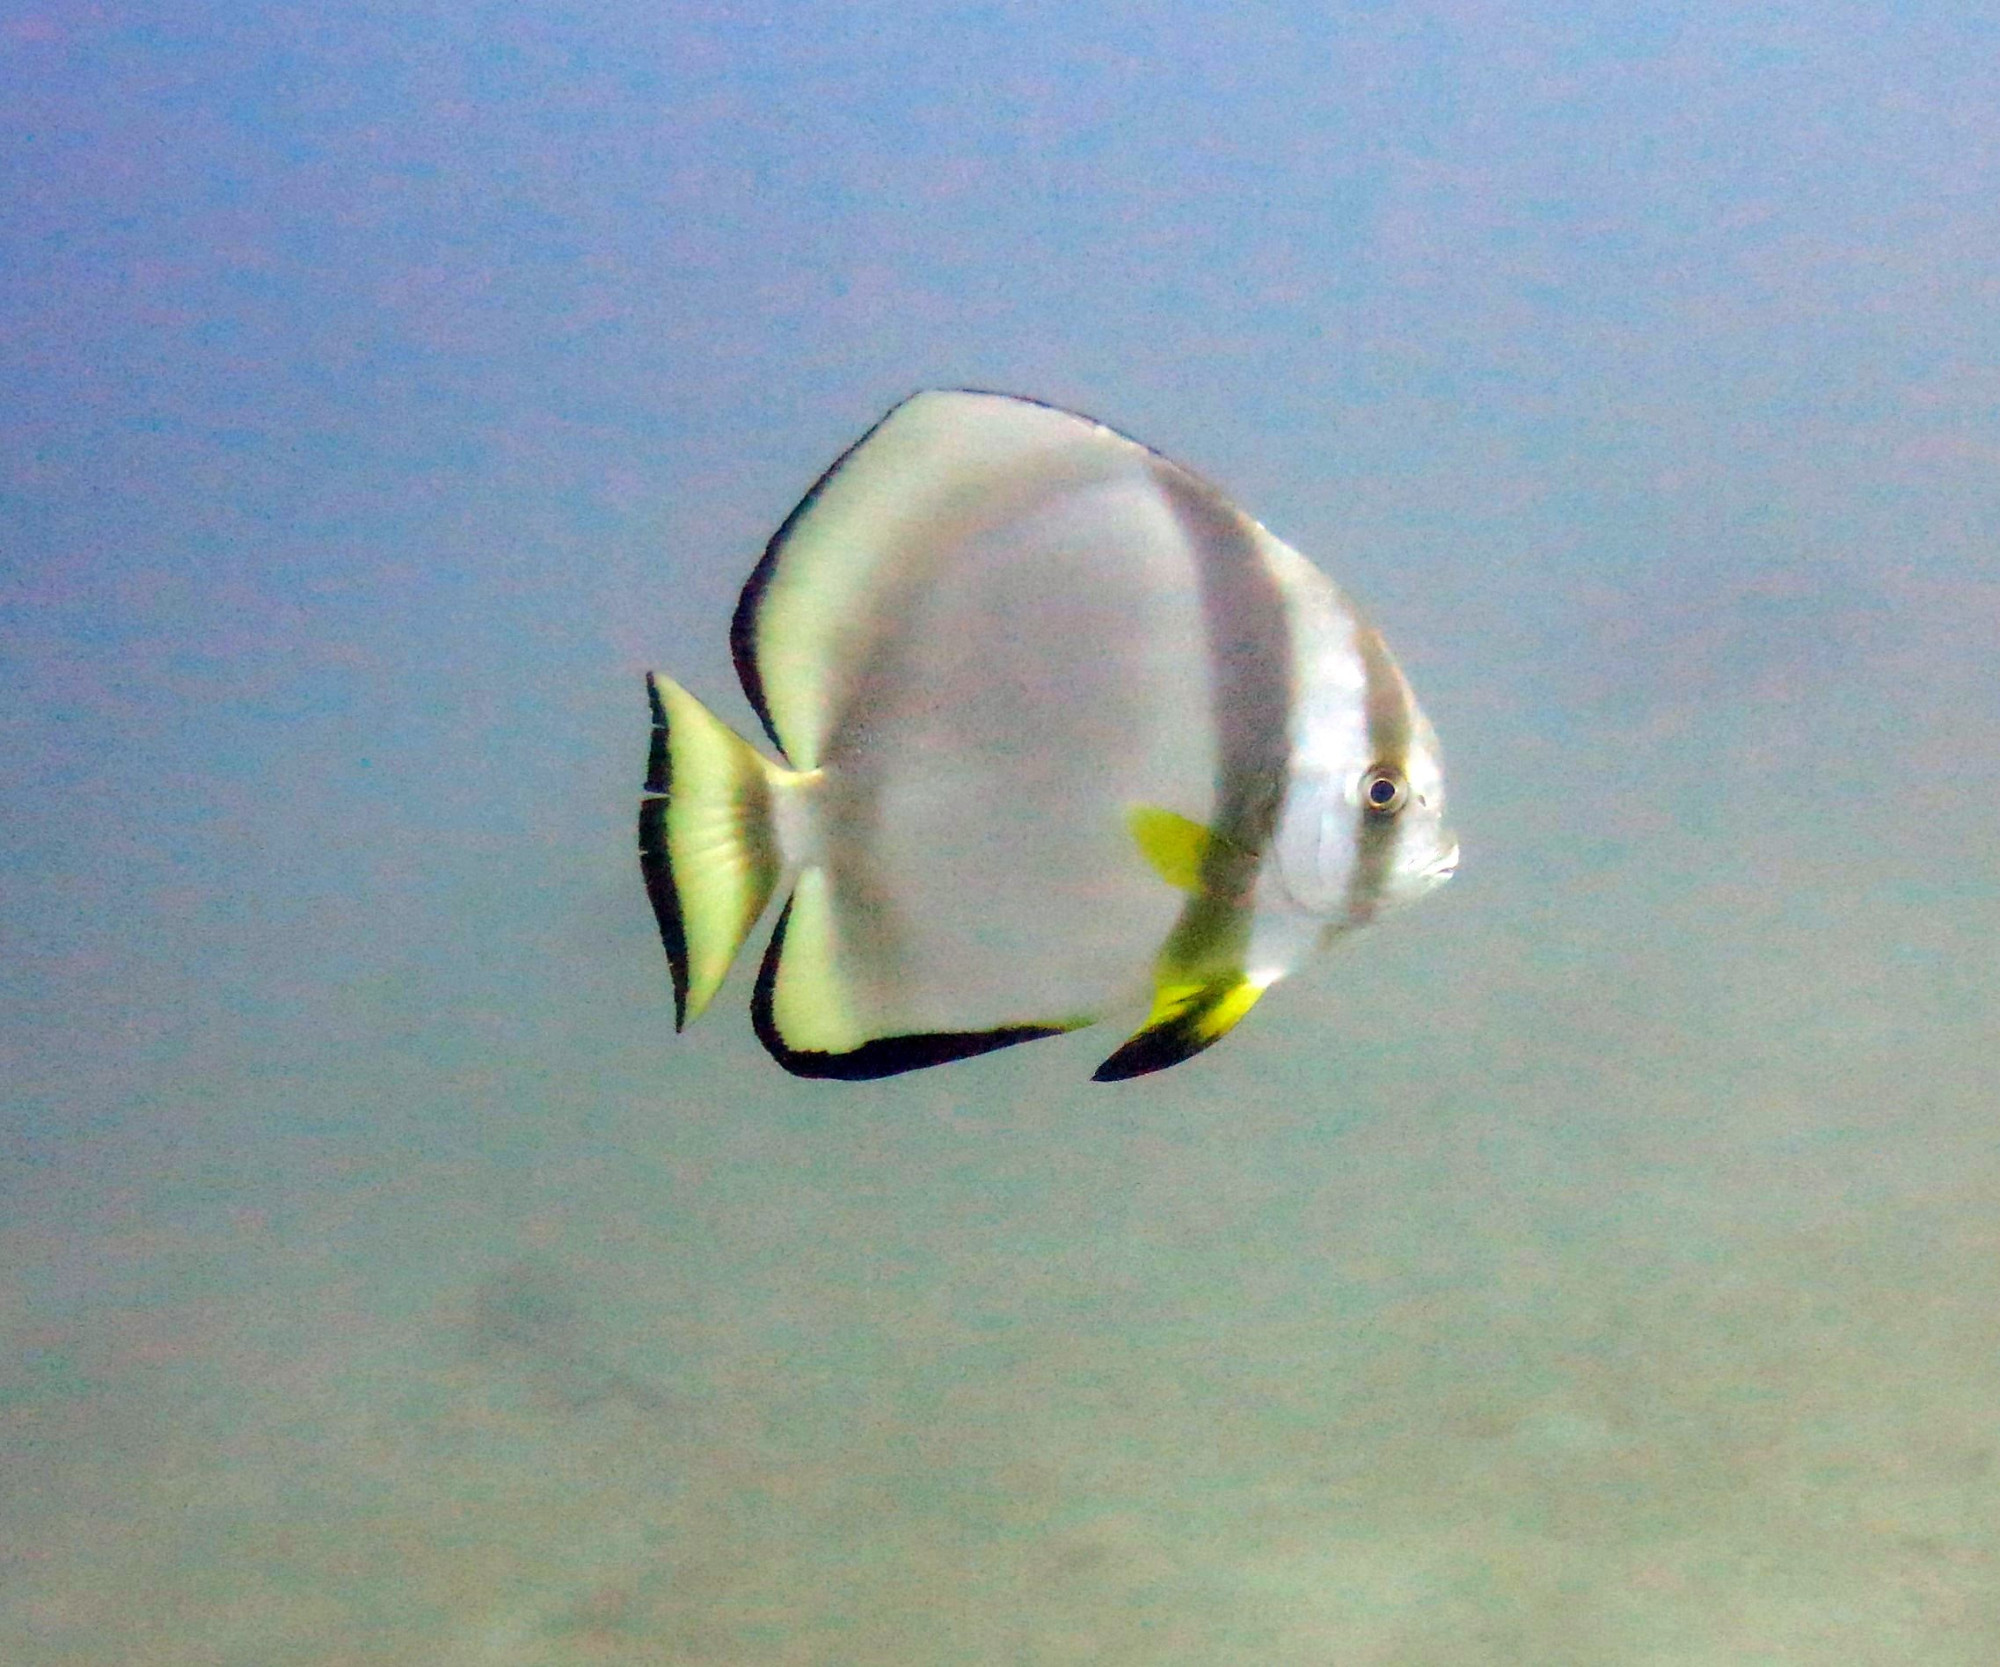 Sabang Point Dive Site, Филиппины